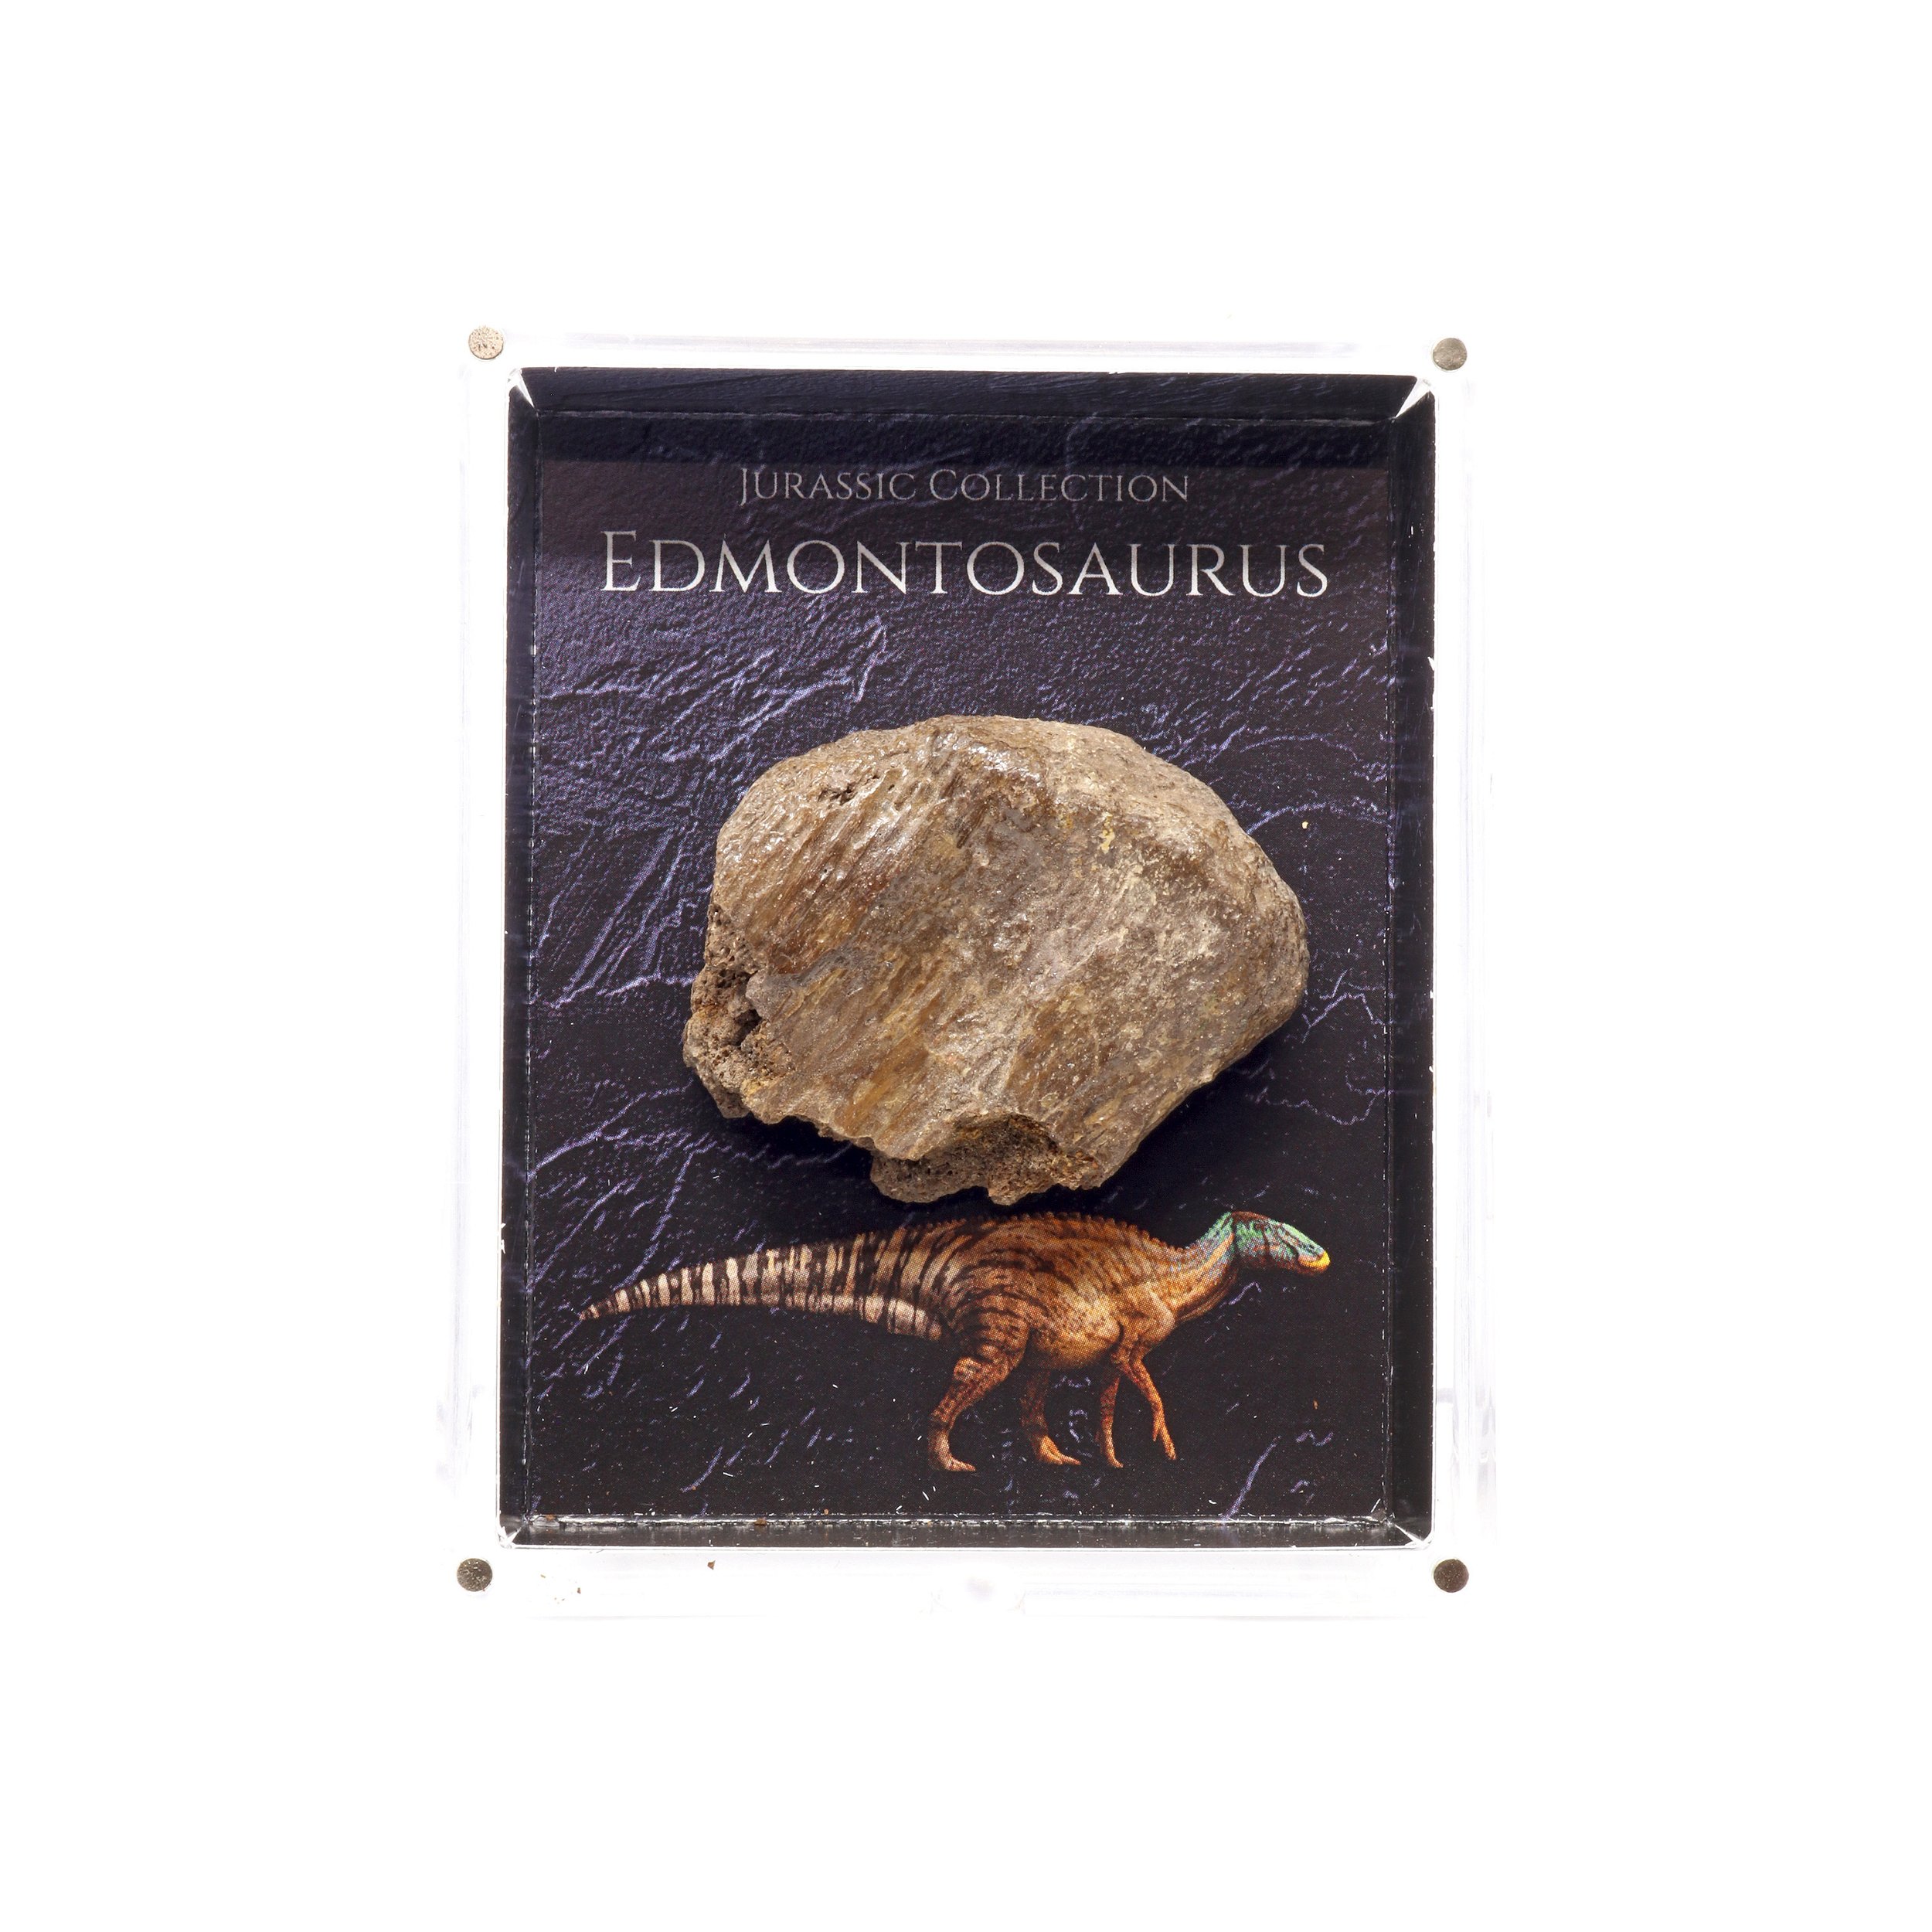 Jurassic Collection - Edmontonsaurus Dinosaur Fossil